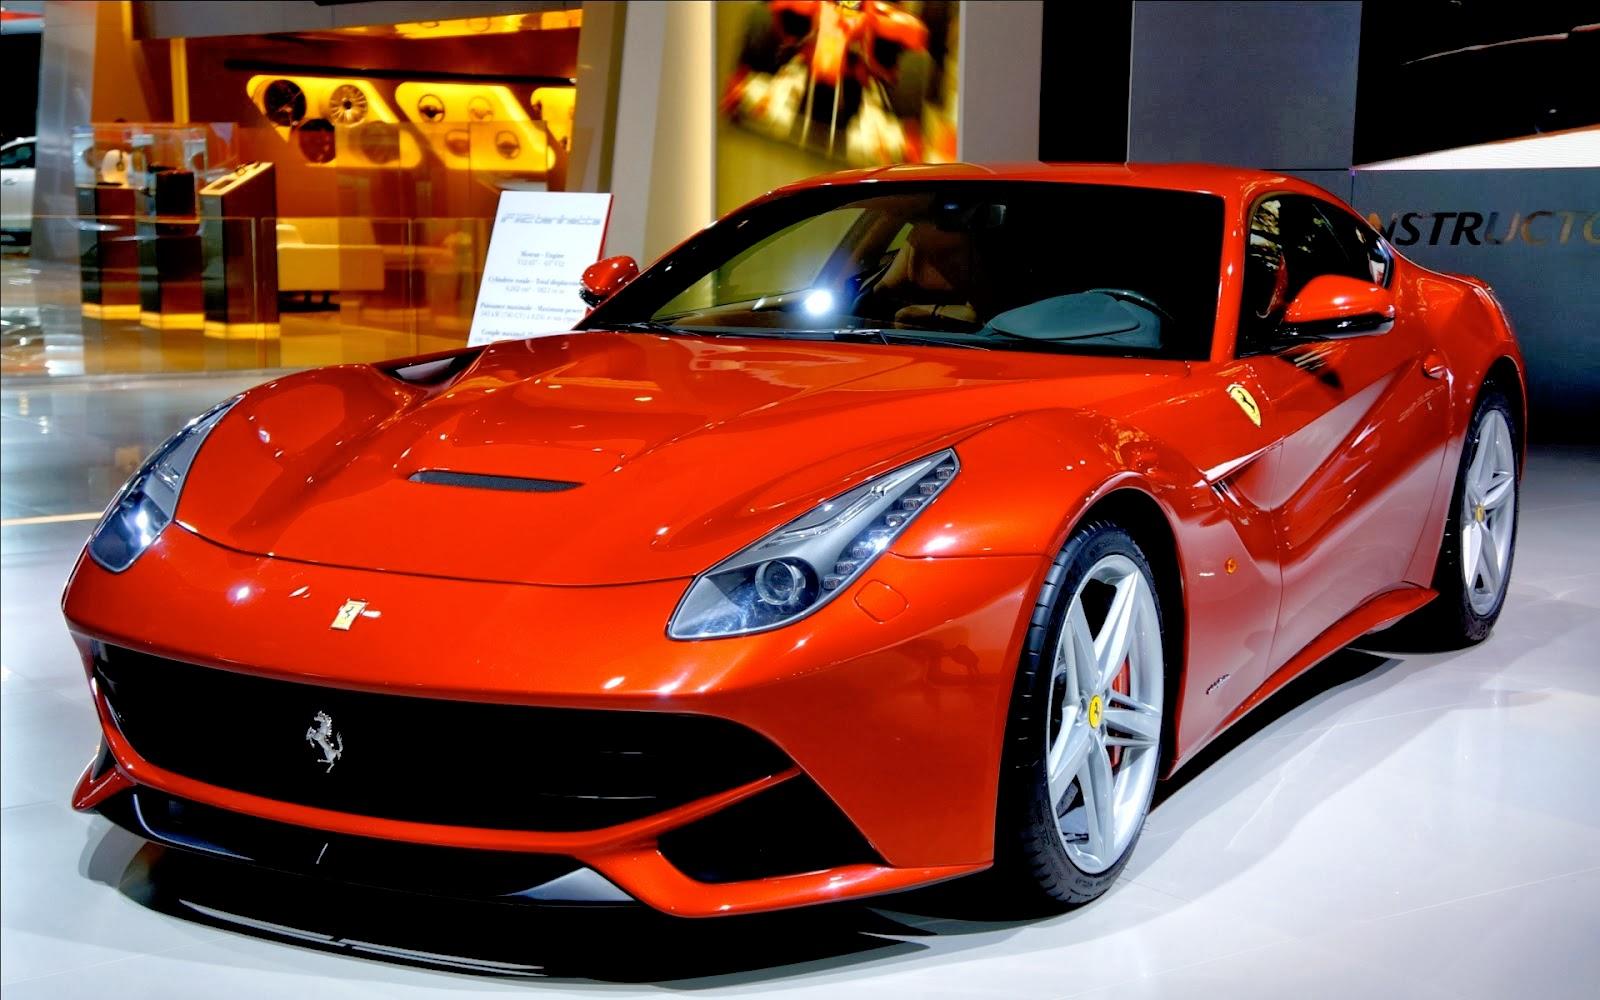 1600 x 1000 · jpeg - All Hot Informations: Download Ferrari F12 berlinetta HD Wallpaper 1080p